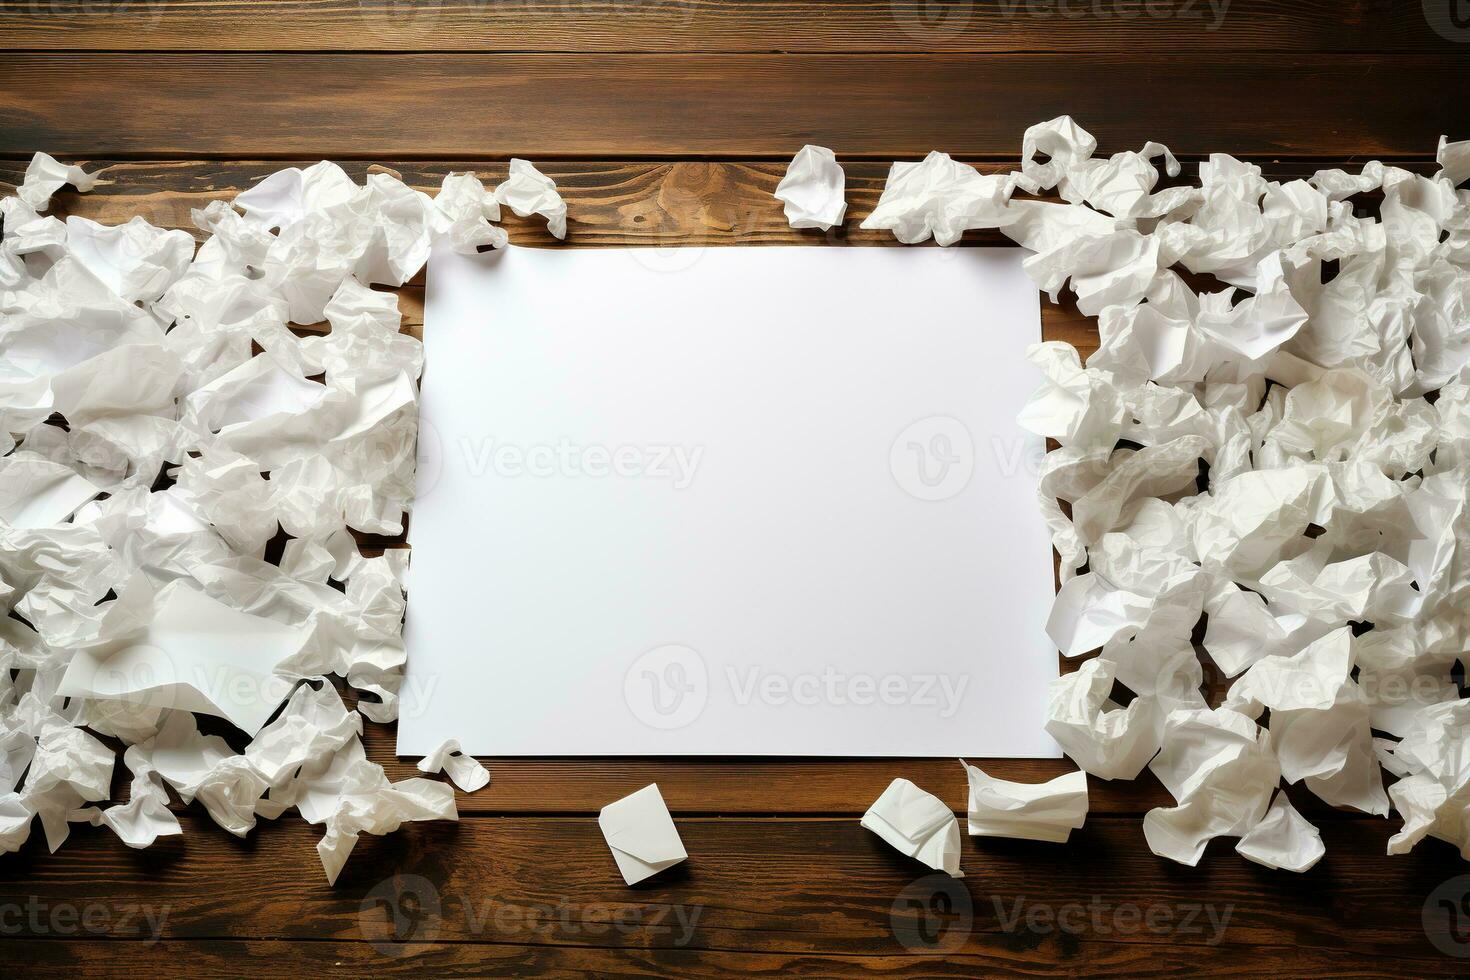 blanco sábana de papel en un de madera mesa y muchos estropeado hojas alrededor. del escritor bloquear o del escritor bloquear concepto. ver desde encima foto